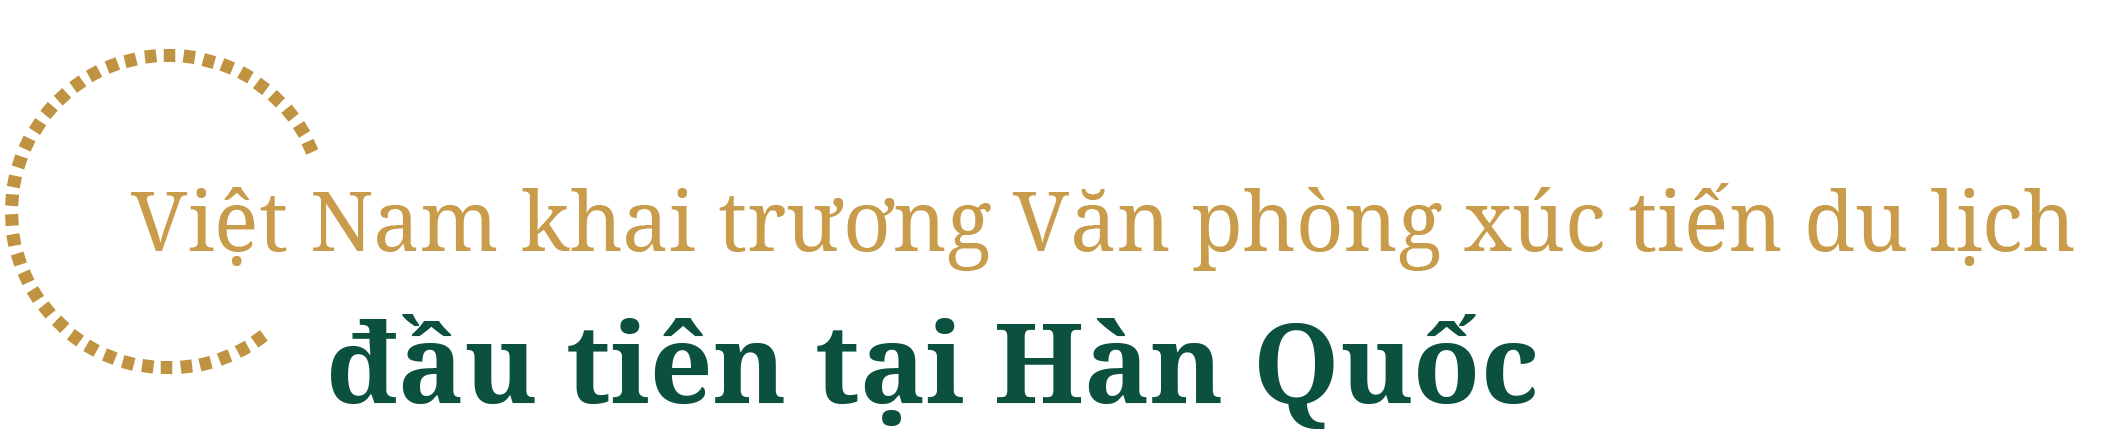 Du lịch Việt Nam đón lượng khách kỷ lục, nhận cơn mưa giải thưởng trong năm 2019 - 8